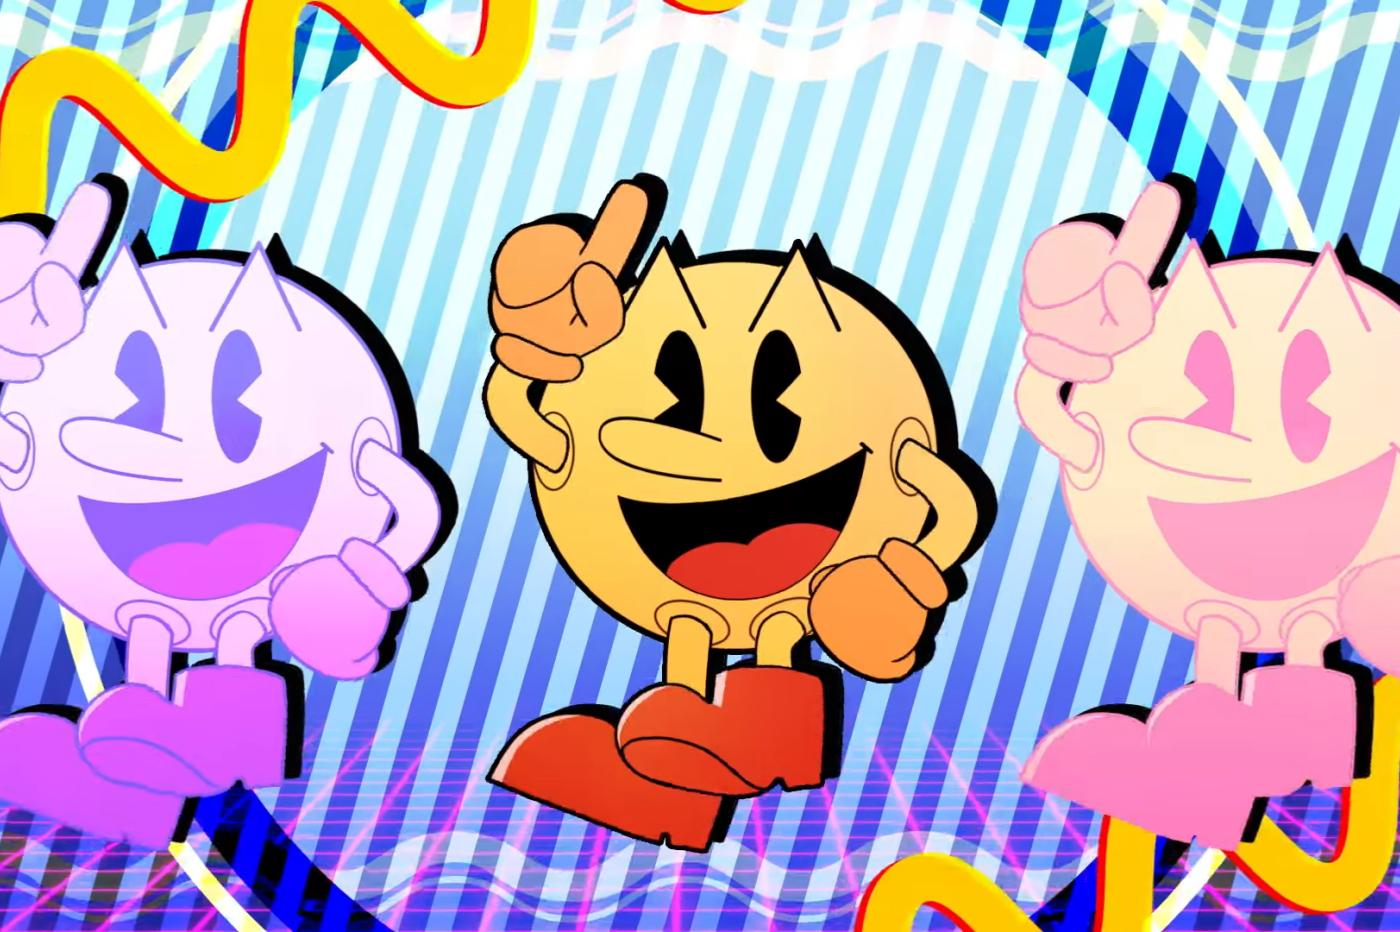 Capture d'écran du clip vidéo de Pac Man pour son 42 ème anniversaire montrant Pac Man dans un style animé retro